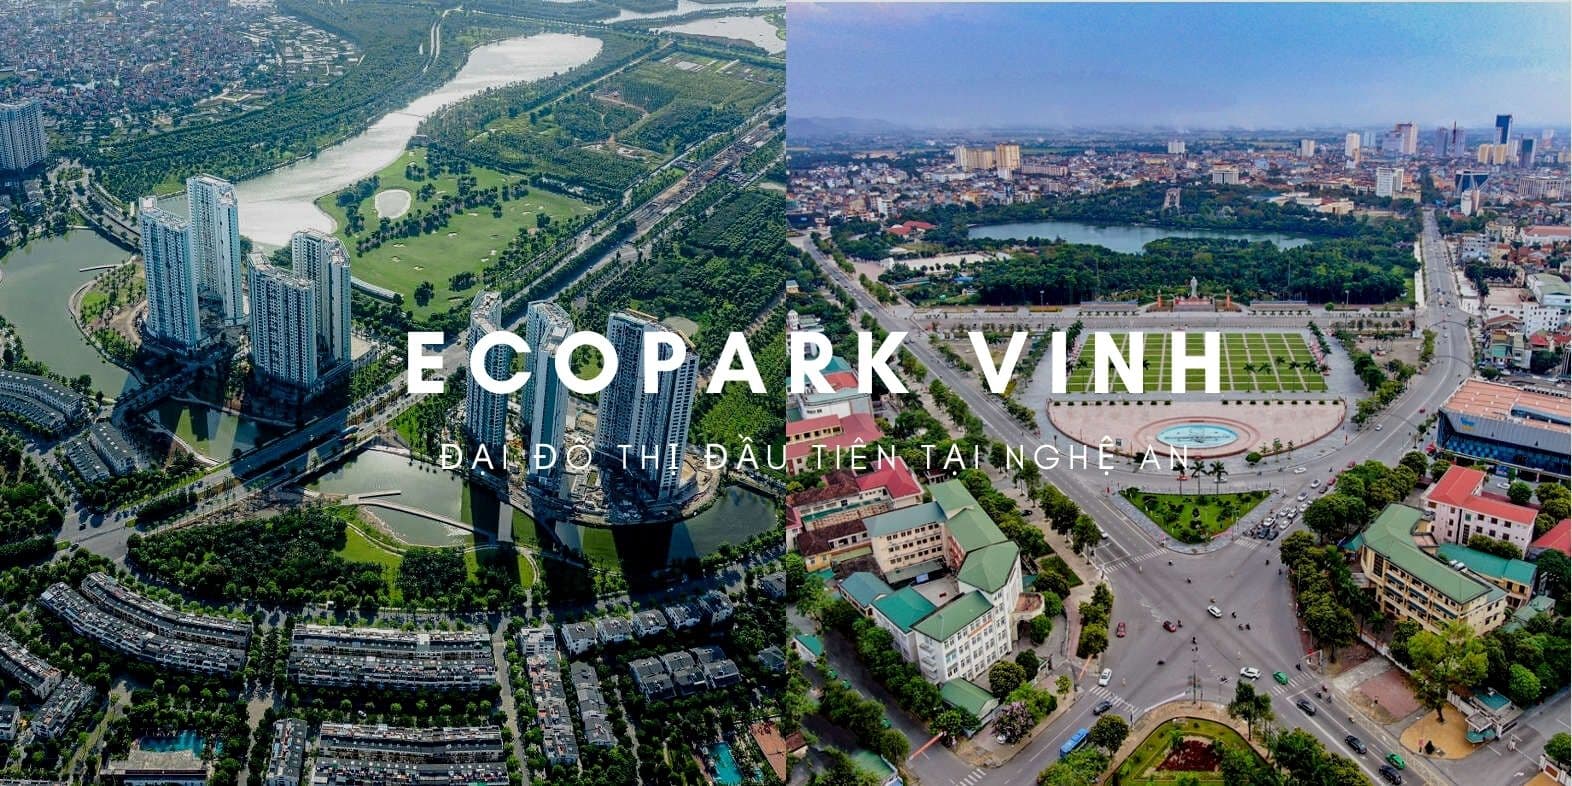 Khối tiện ích đẳng cấp của đại đô thị xanh Ecopark Vinh